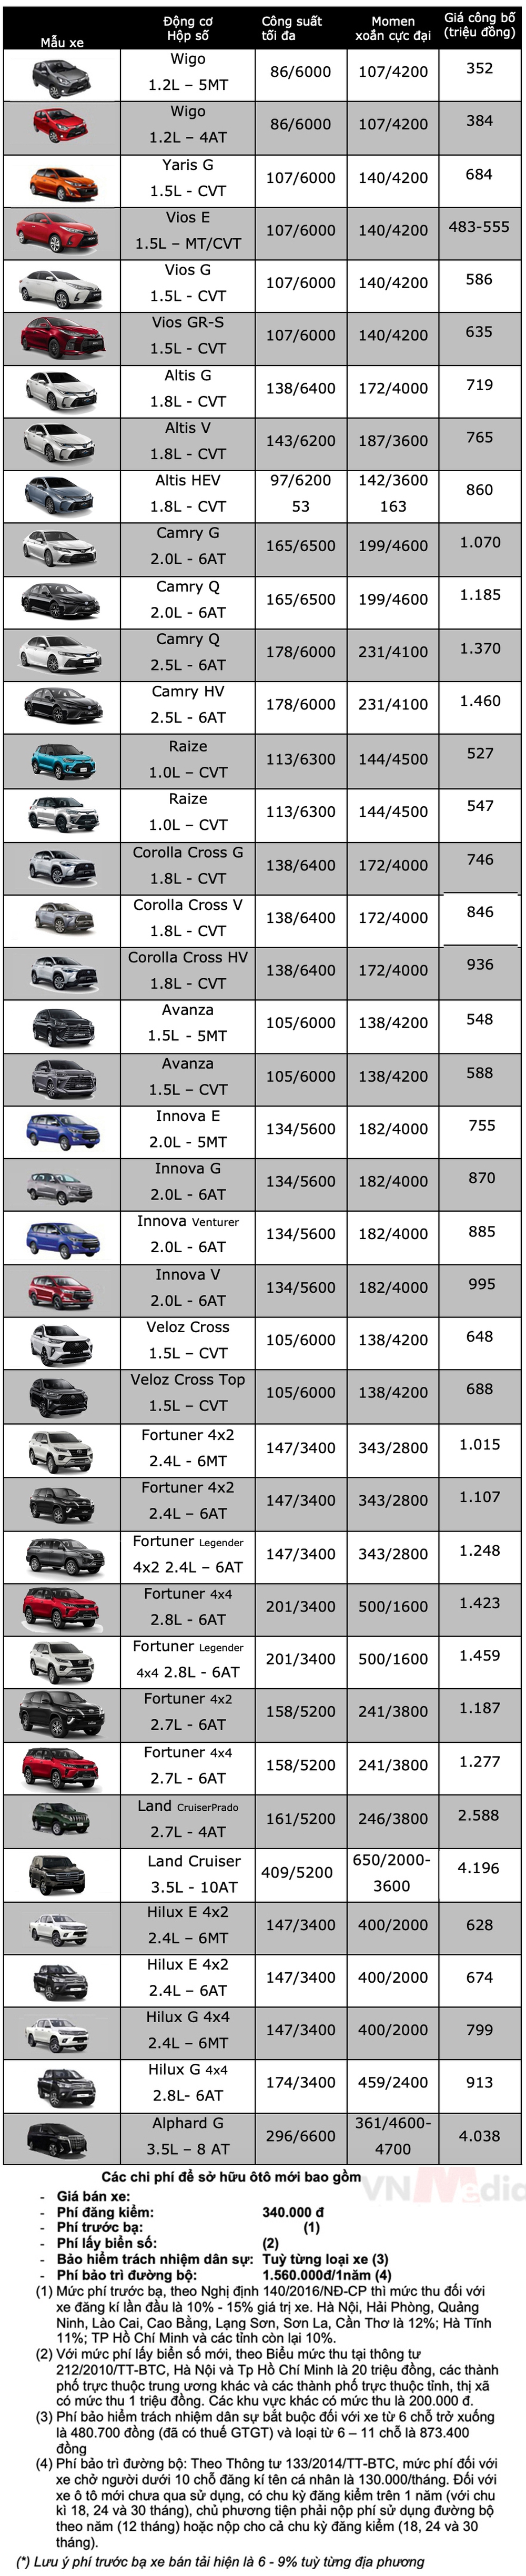 Bảng giá xe Toyota tháng 3: Toyota Corolla Cross được ưu đãi 50% lệ phí trước bạ - Ảnh 2.